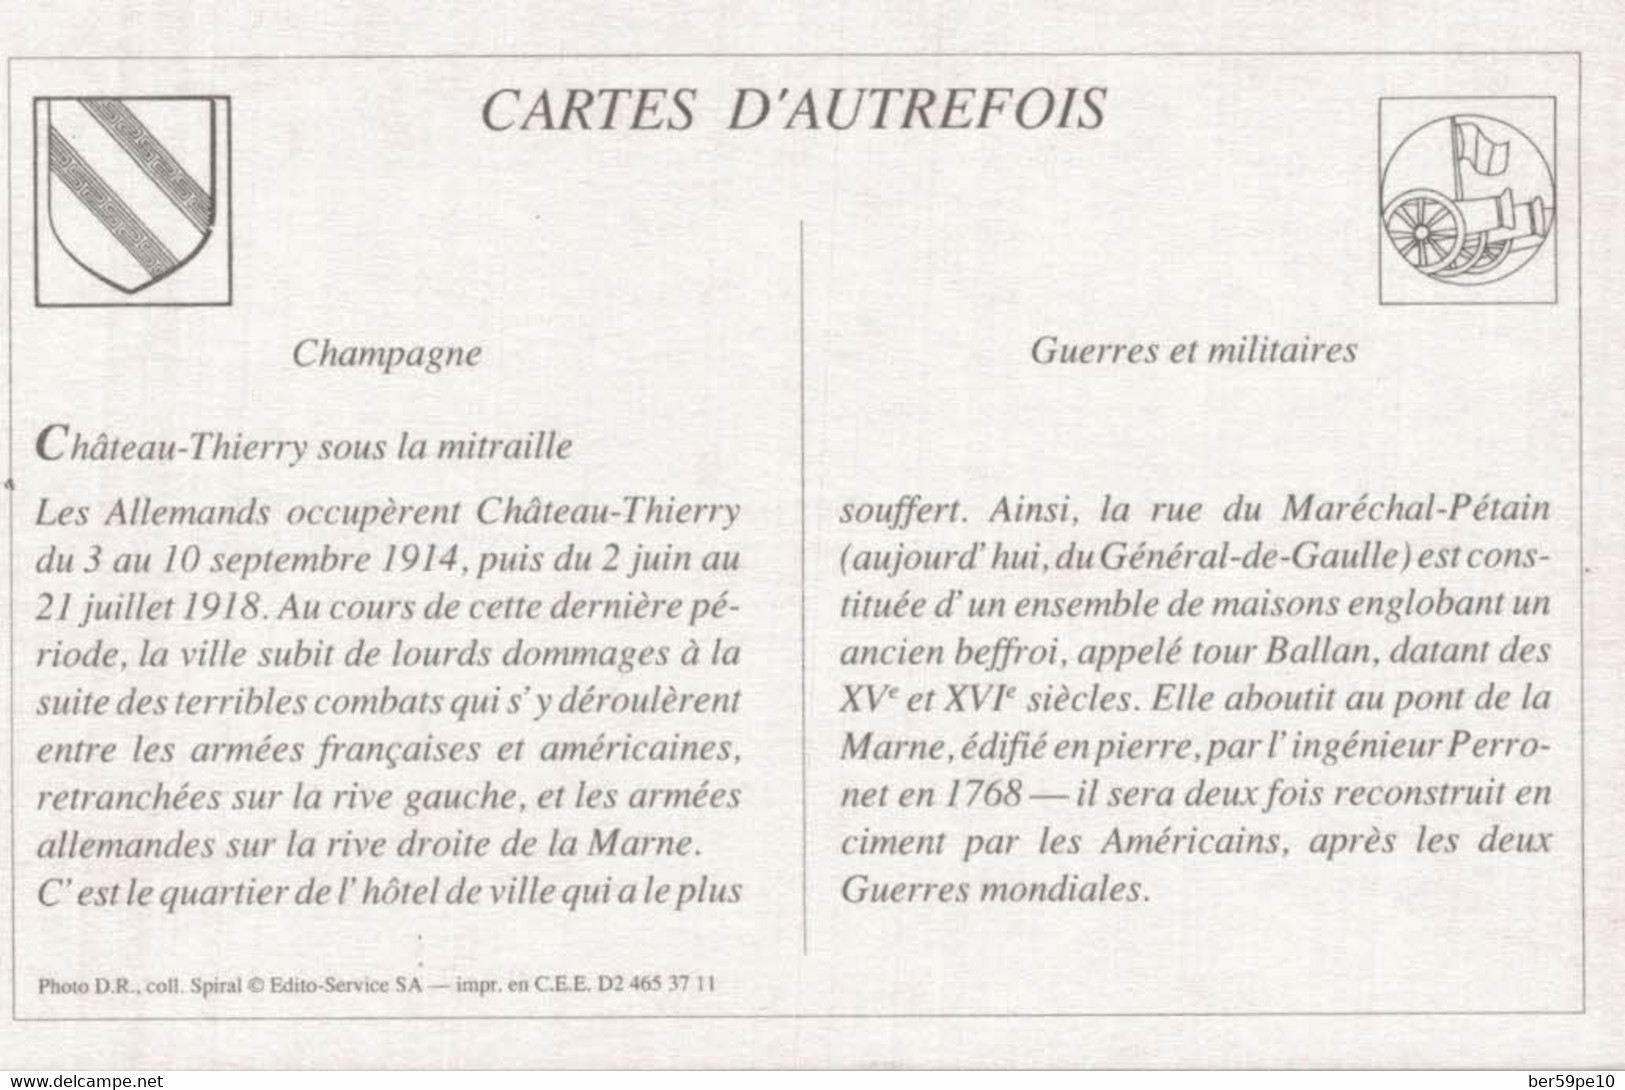 CARTES D'AUTREFOIS GUERRES ET MILITAIRES CHAMPAGNE CHATEAU-THIERRY SOUS LA MITRAILLE - Champagne-Ardenne